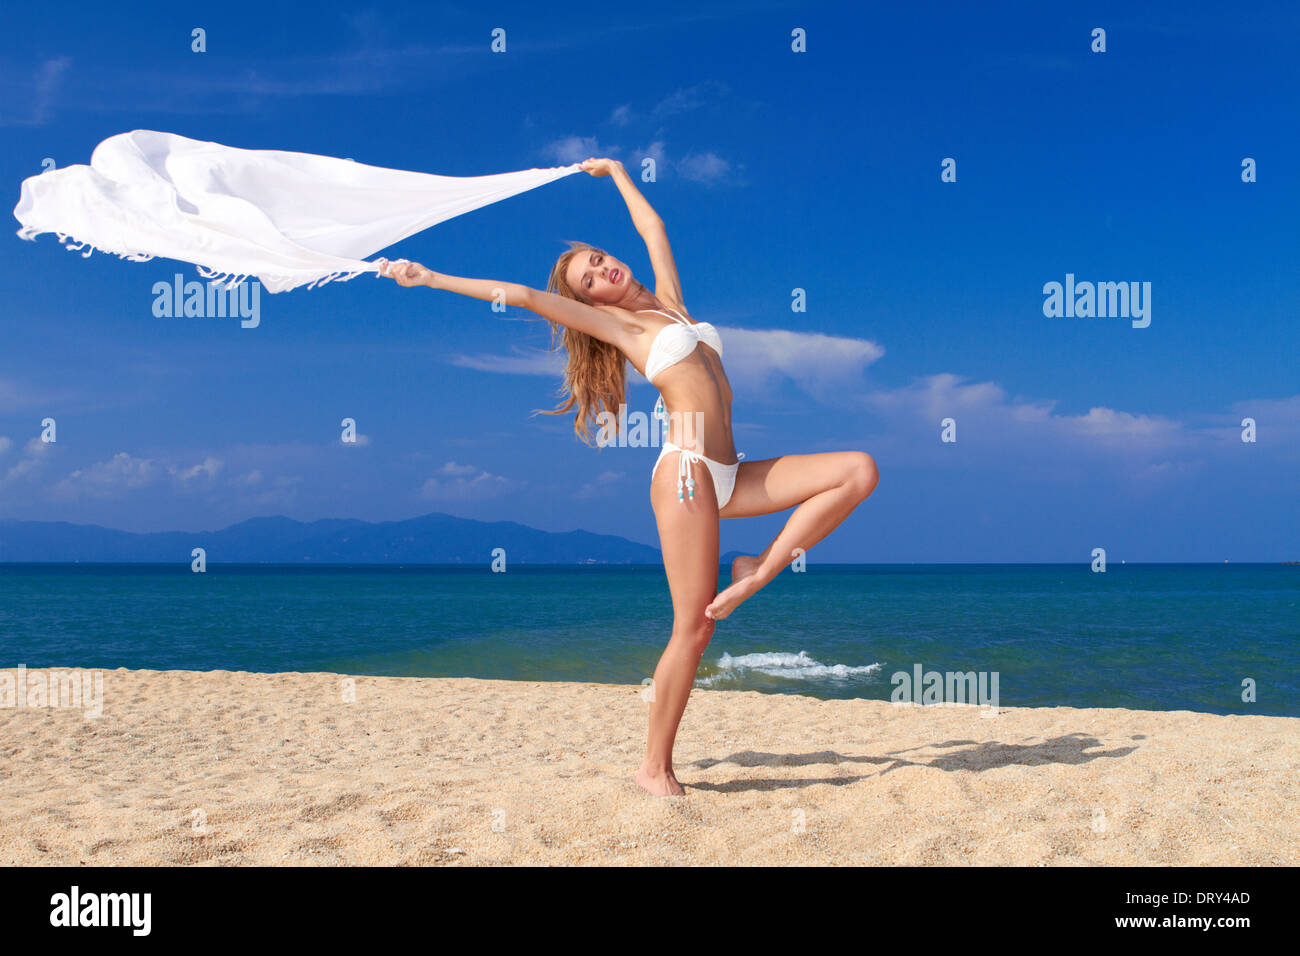 Bikini bekleideten Schönheit in einer Tänzer Pose am Strand Stockfoto